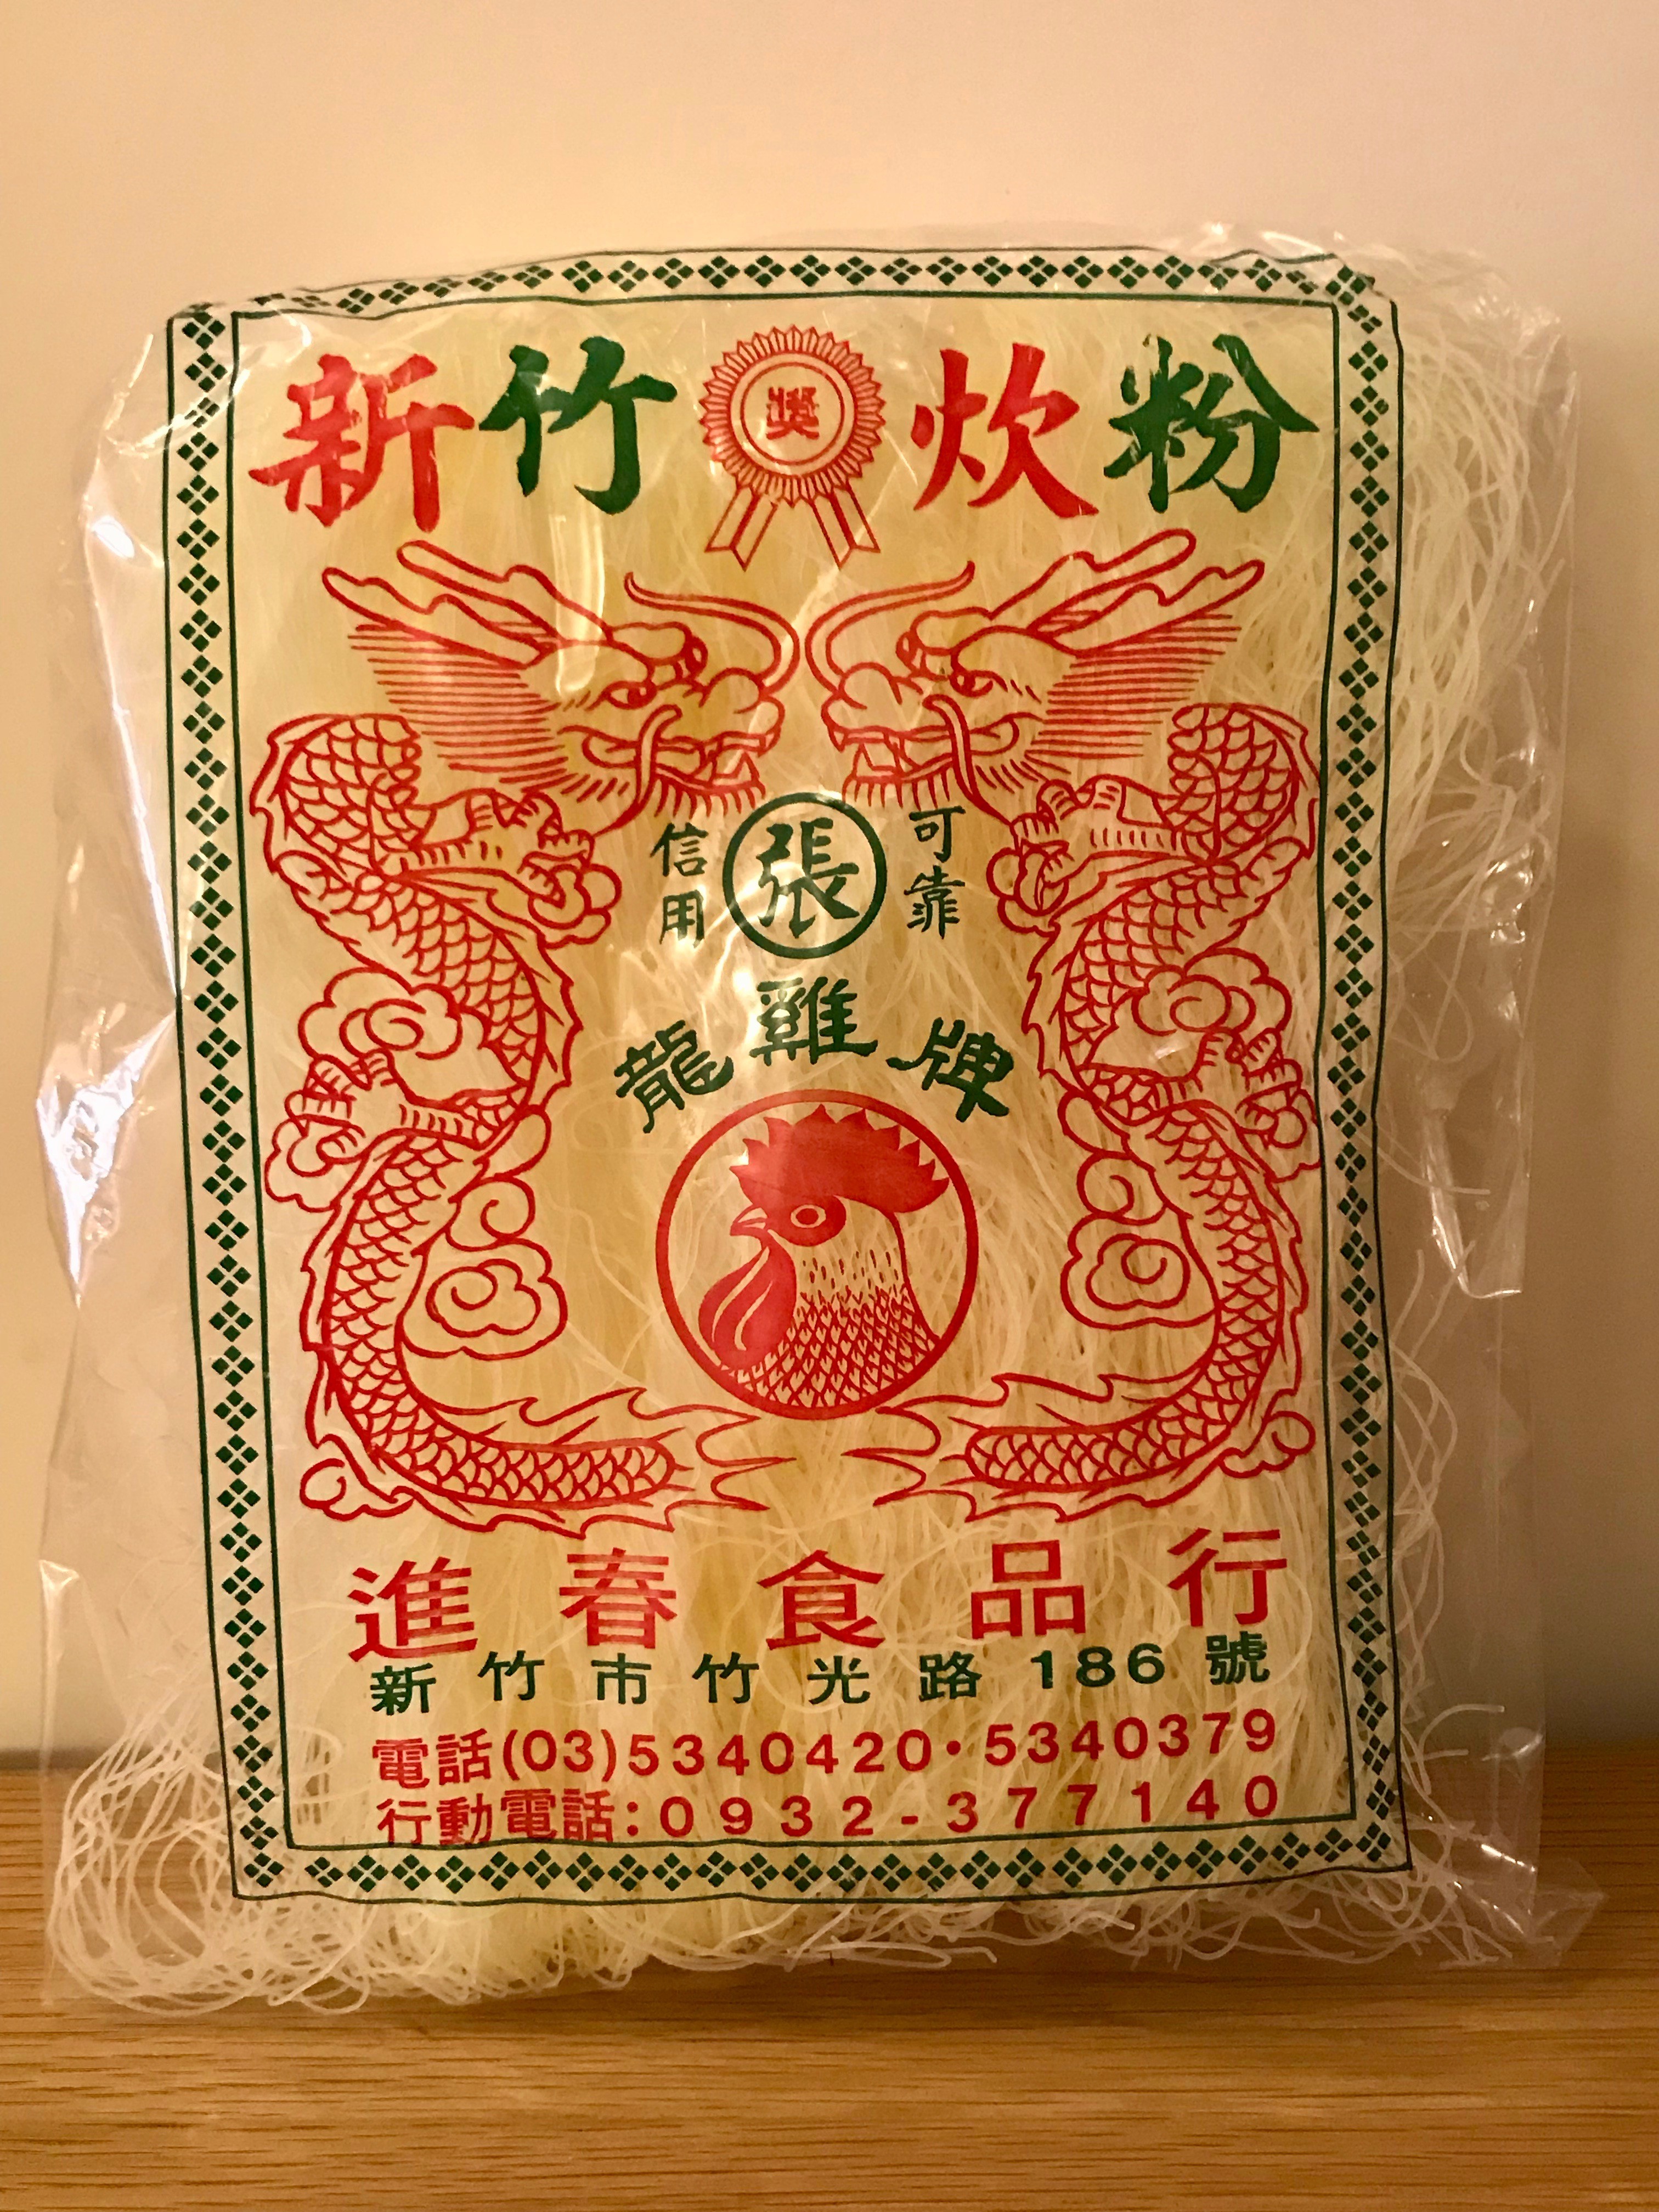 【龍雞牌】新竹炊粉350g(全素)